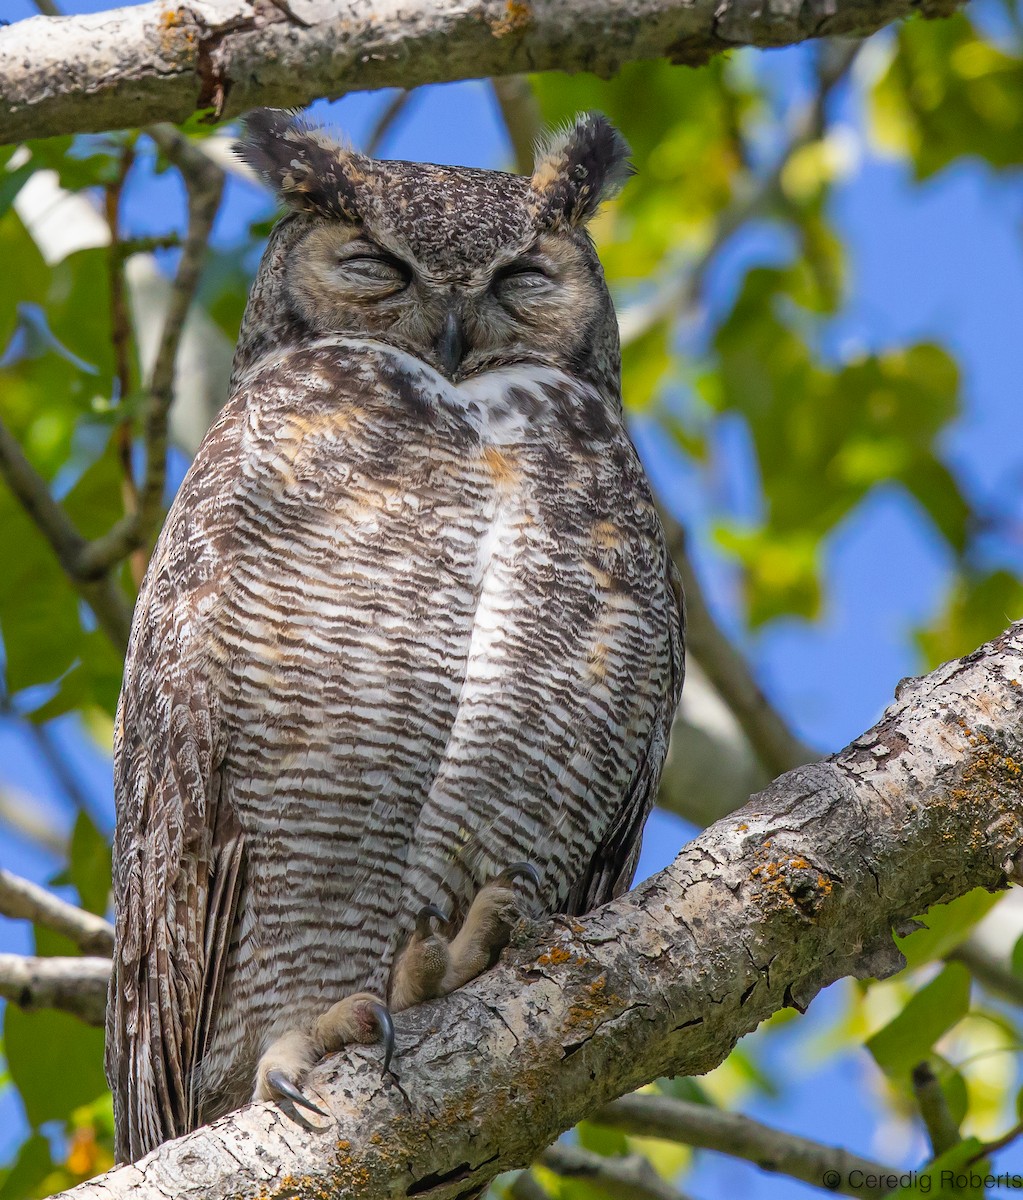 Great Horned Owl - Ceredig  Roberts